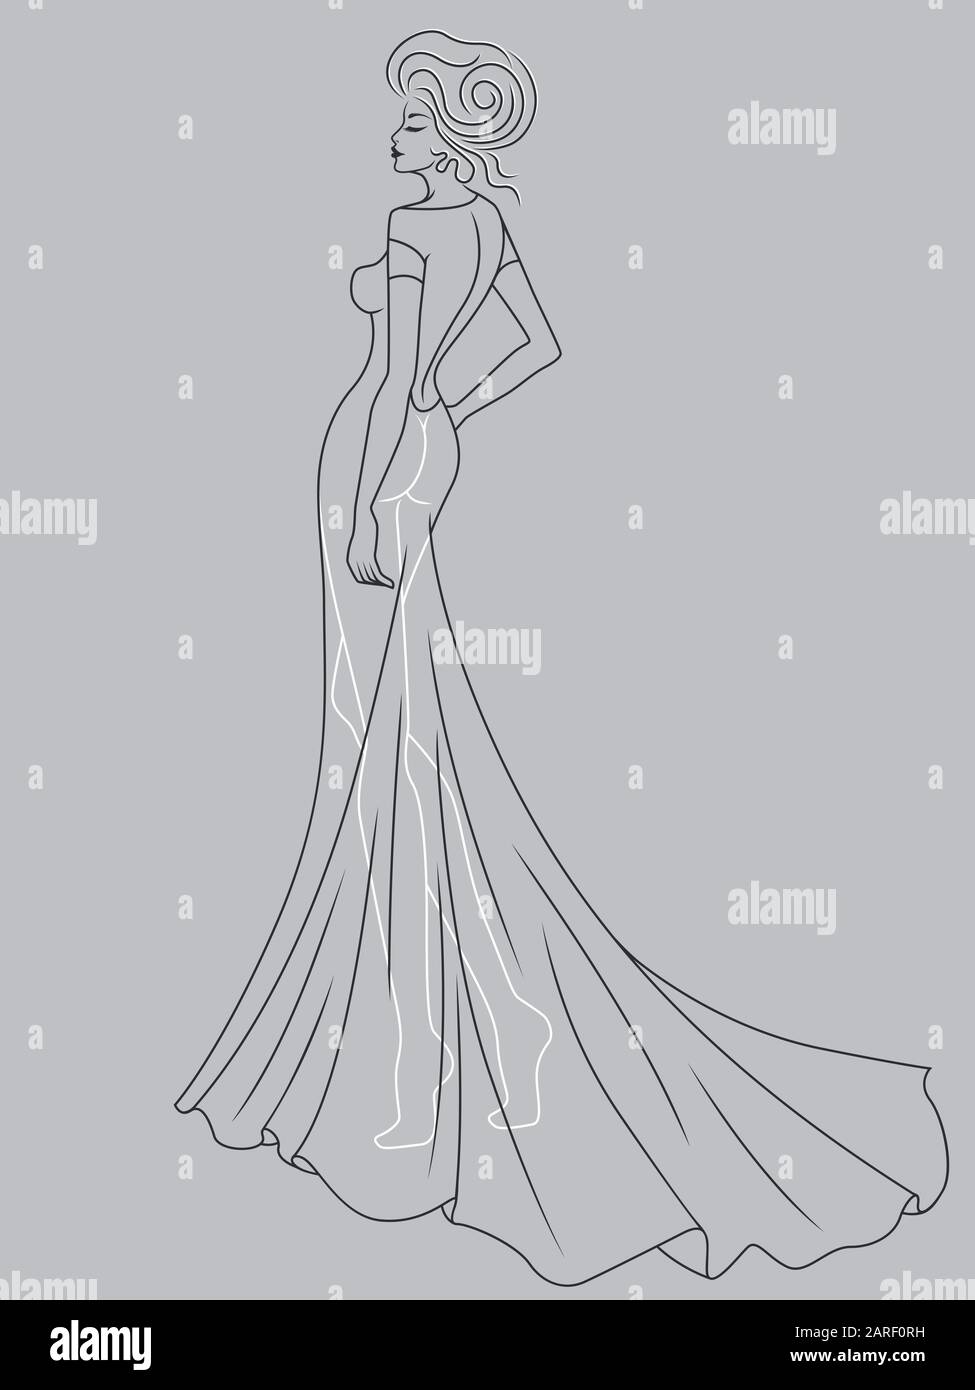 Abstrakter Umriss der charmanten und anmutigen Dame in einem raffinierten Abendkleiderdesign, isoliert auf dem gedämpften blaugrauen Hintergrund Stock Vektor